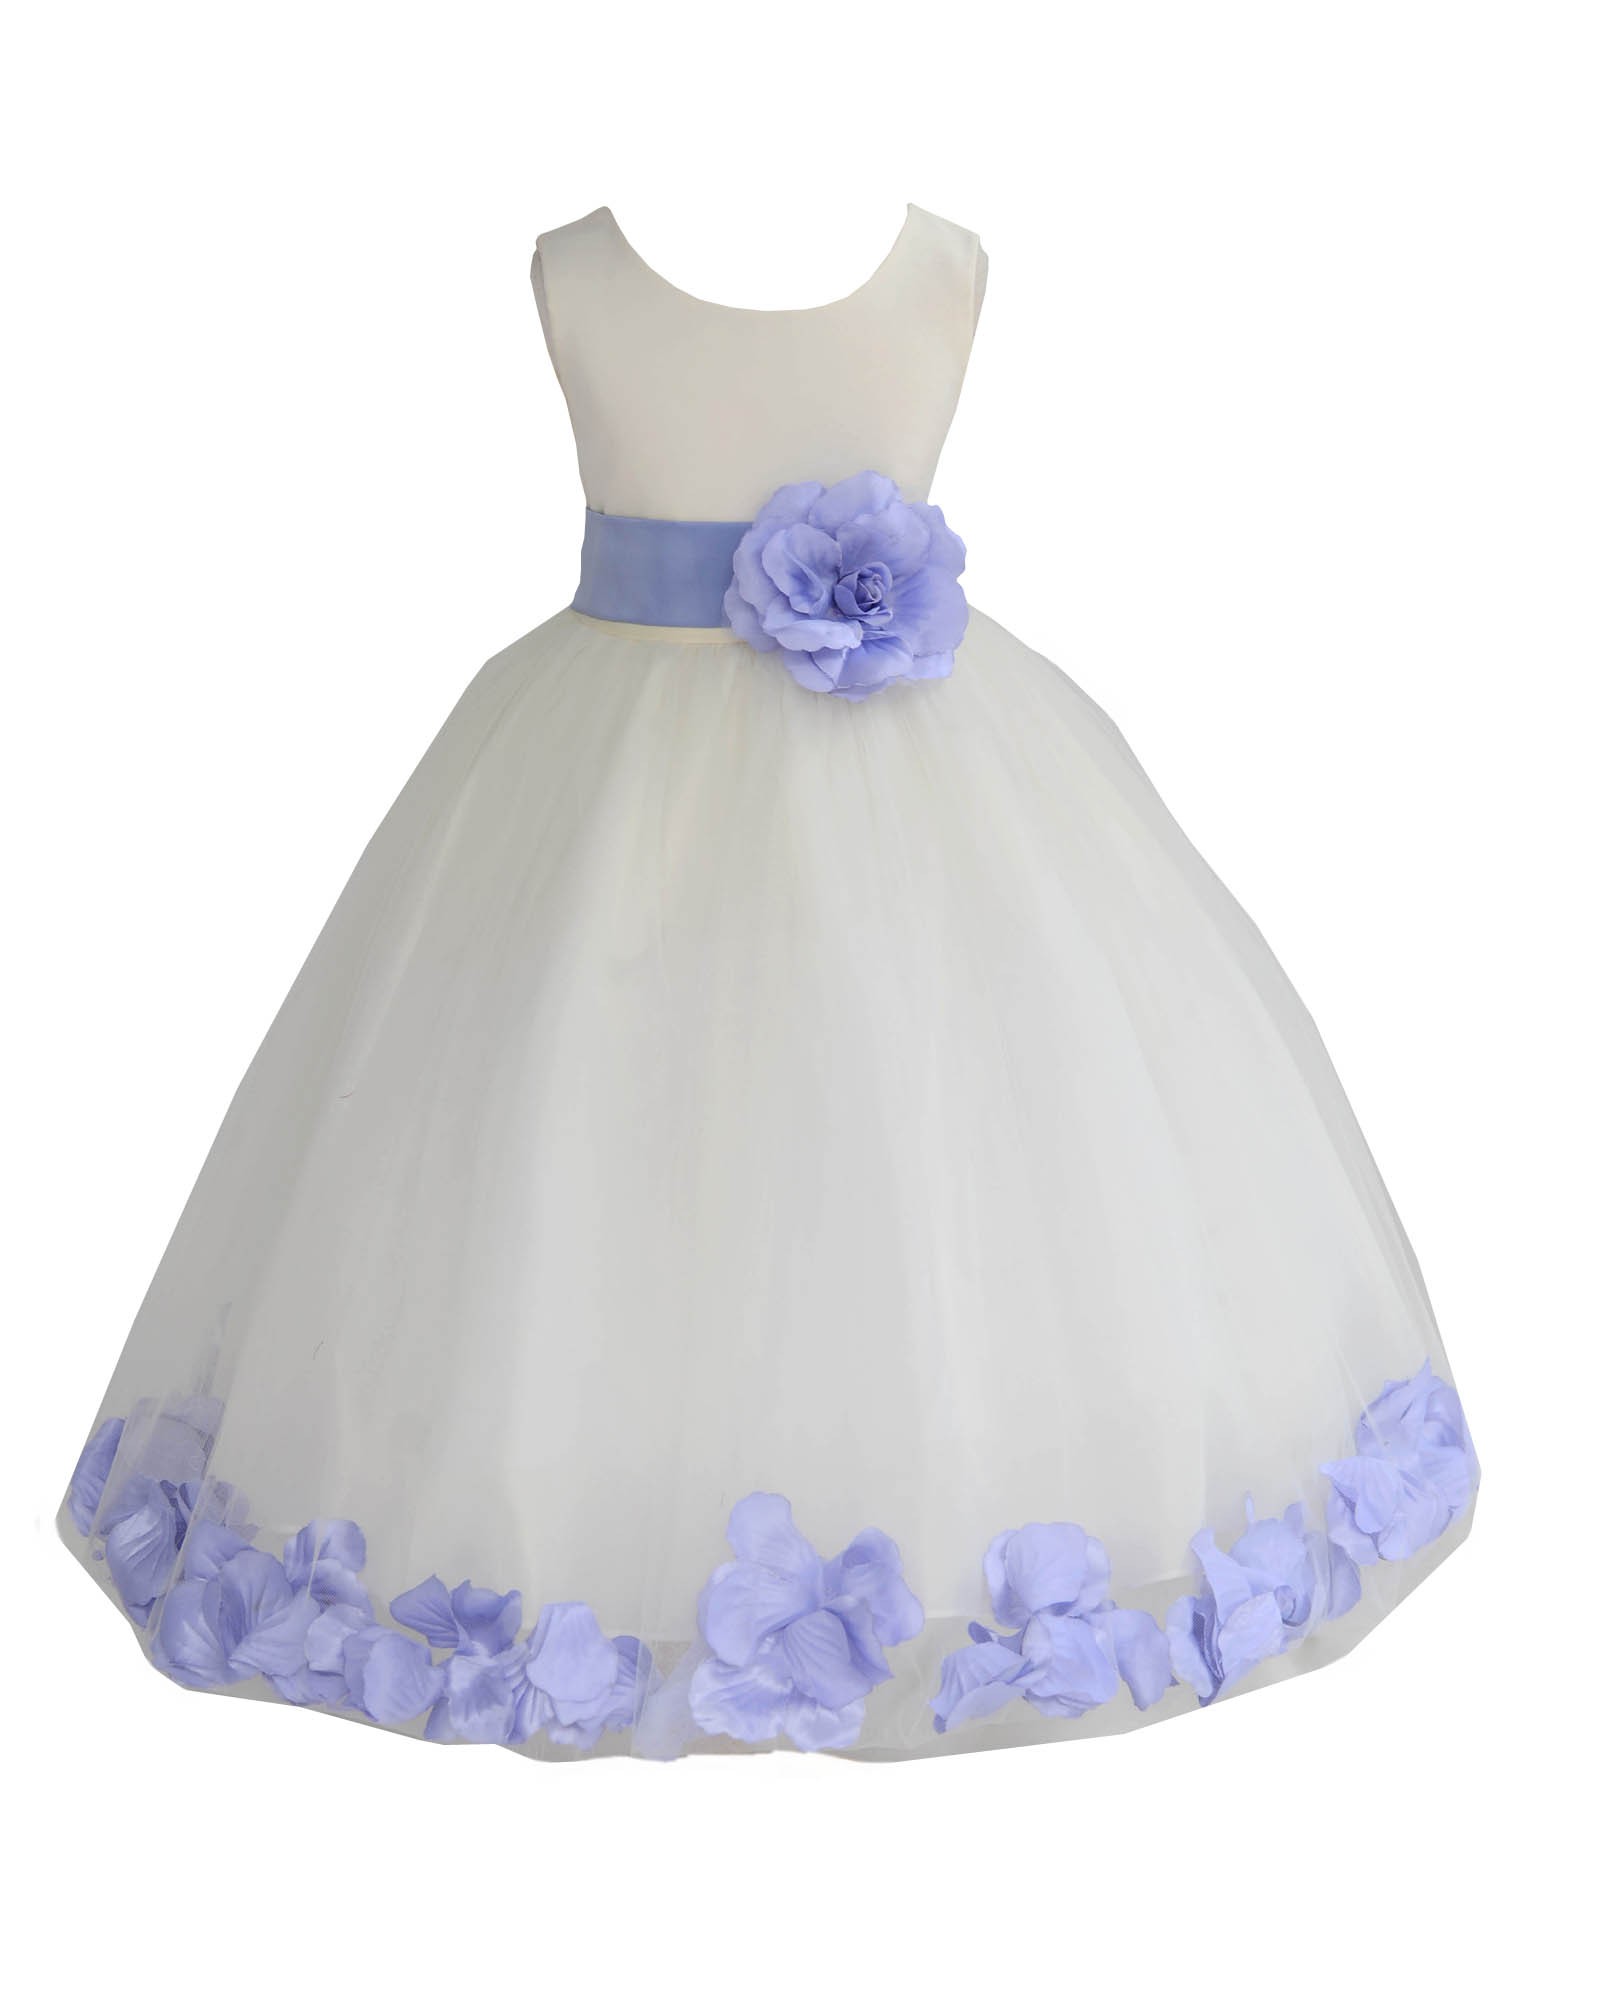 Ivory/Bluebird Tulle Rose Petals Flower Girl Dress Recital 302a